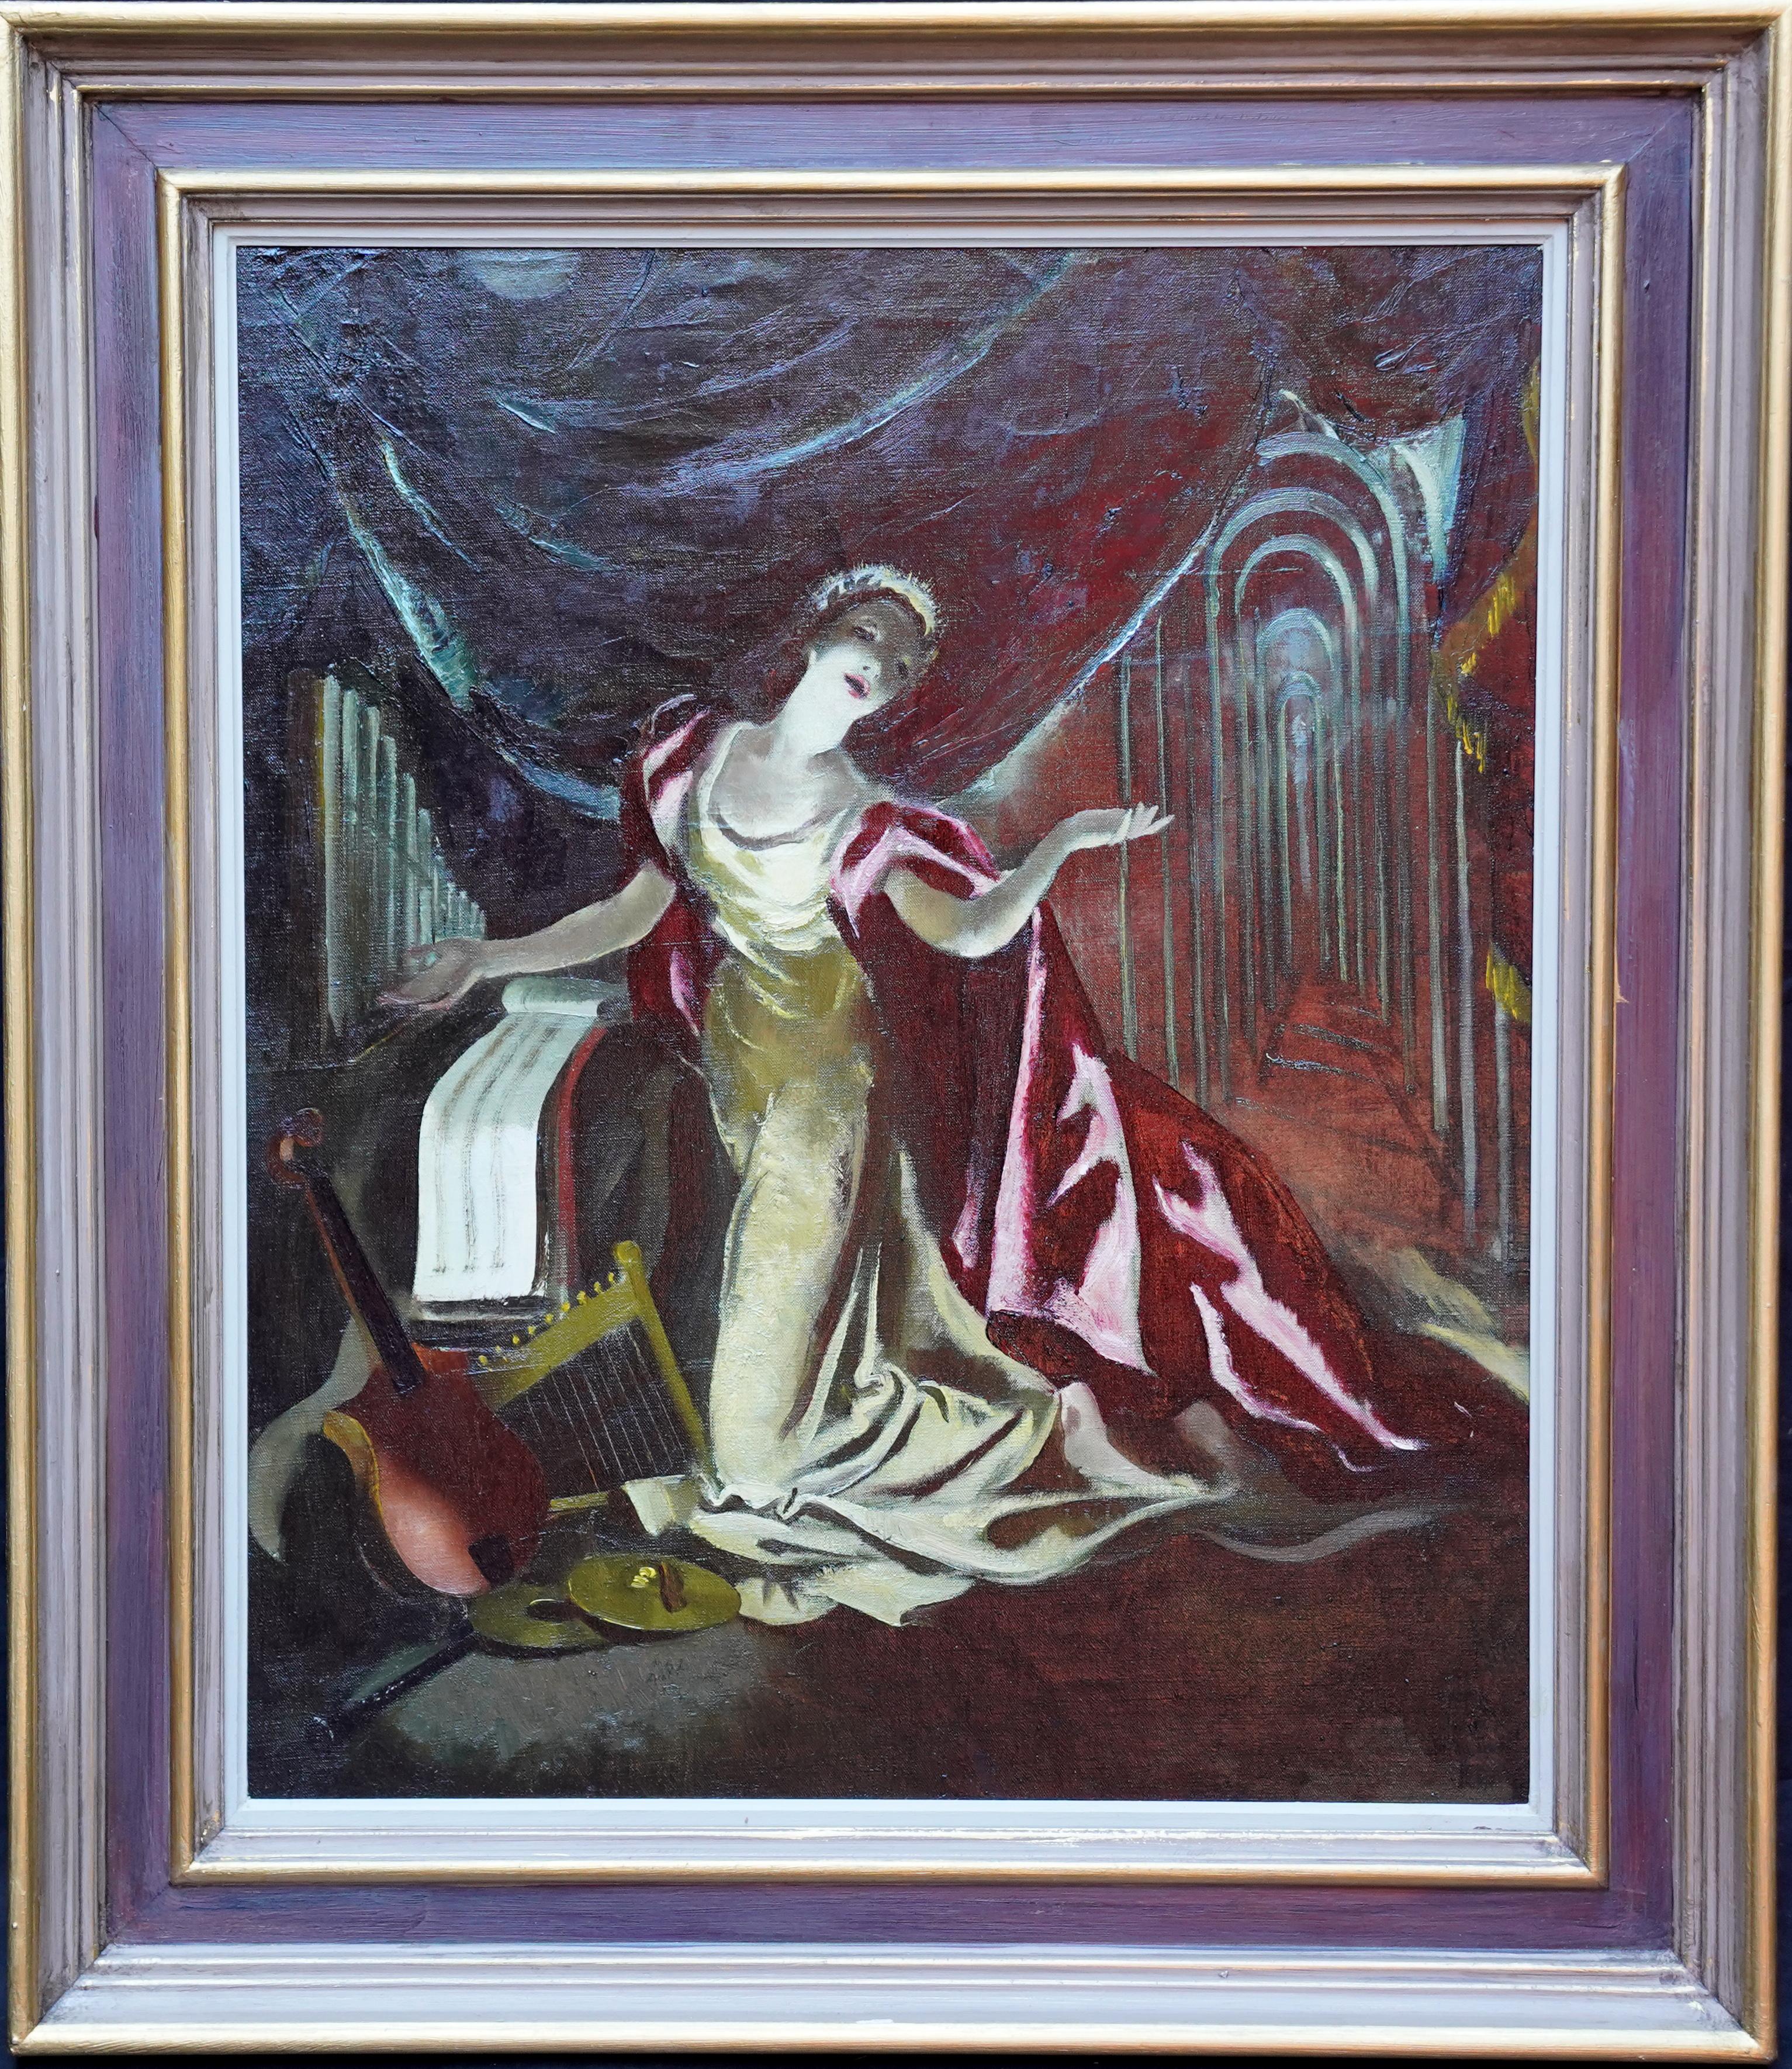 Portrait sur scène - Cape rouge - Peinture à l'huile d'un portrait théâtral écossais des années 60